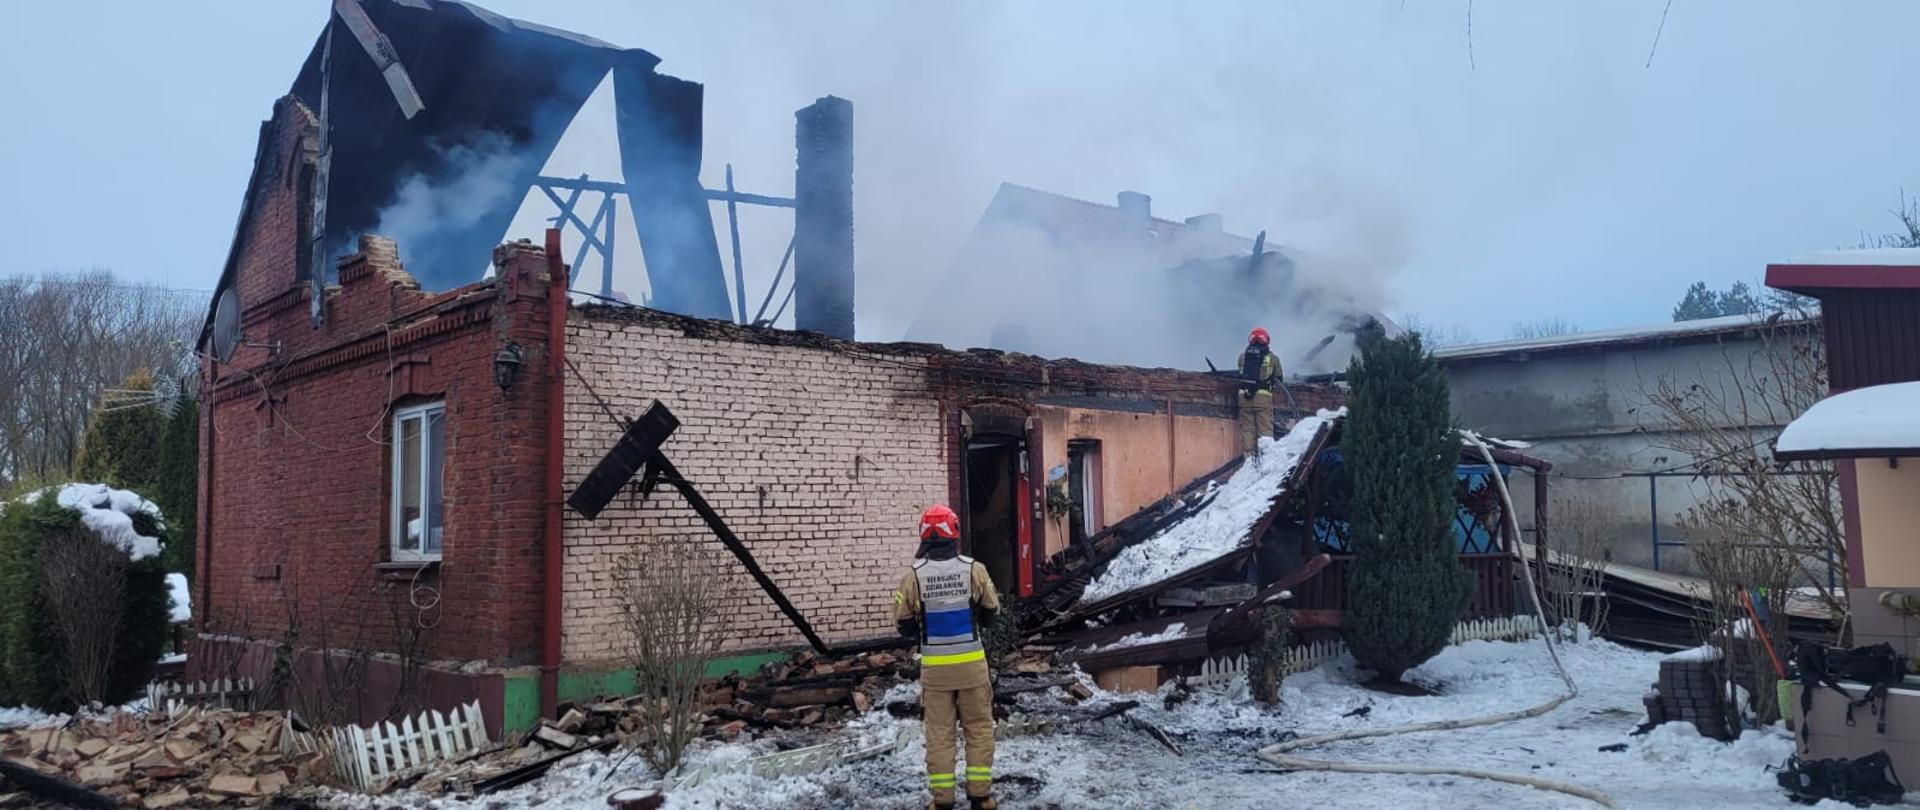 Pożar budynku mieszkalnego w miejscowości Kolosy – powiat kazimierski